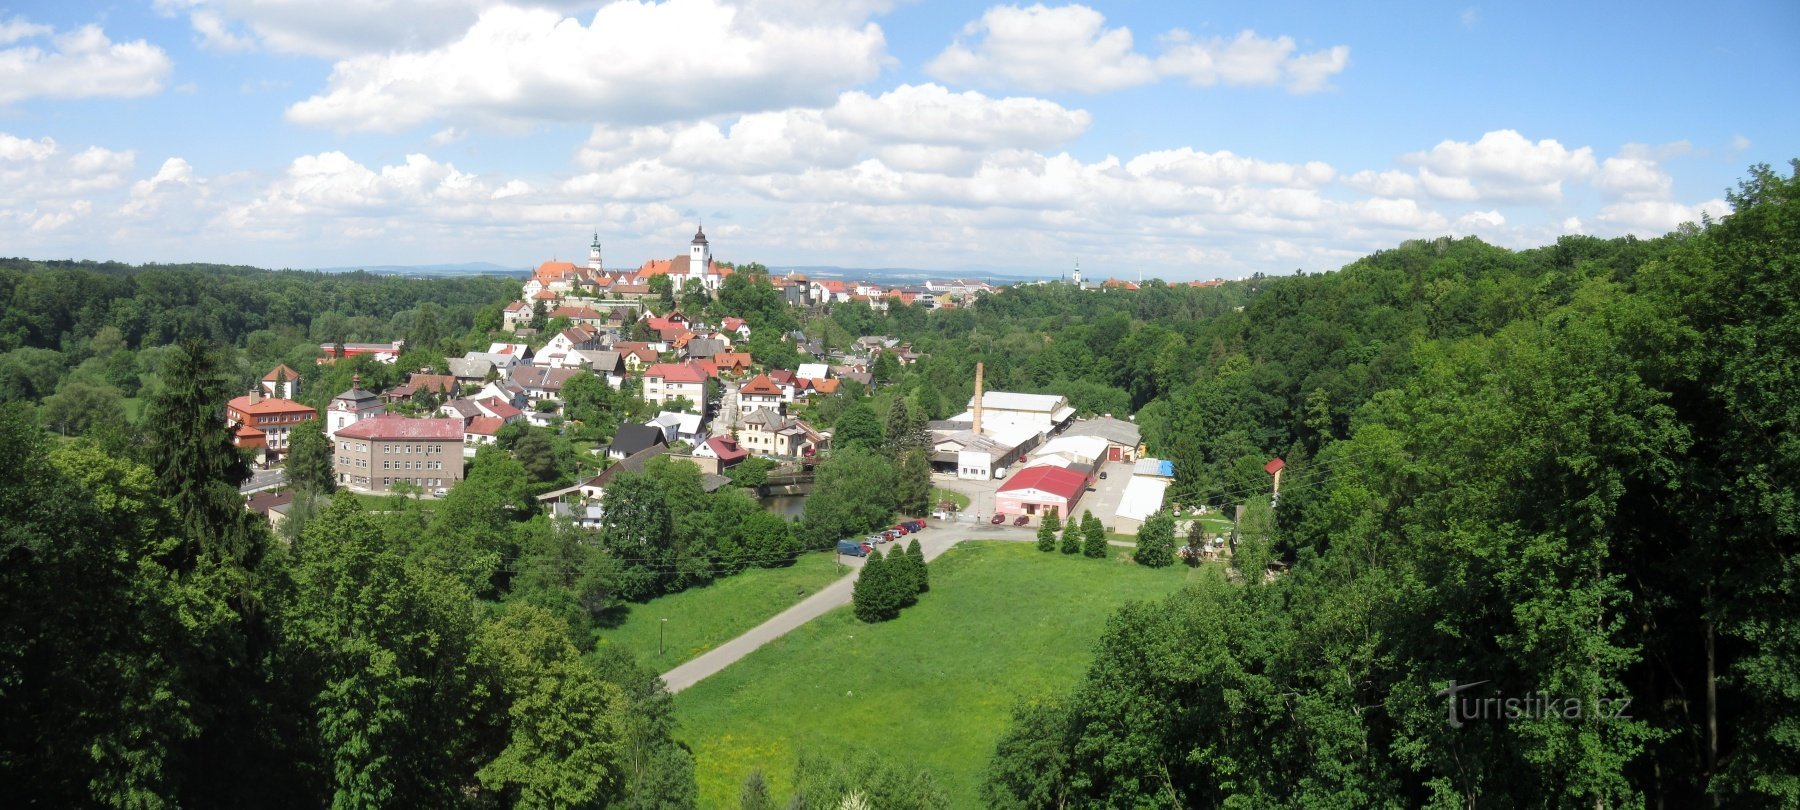 Zřícenina hradu Výrov (také uváděno Starého hradu) a Juránkova vyhlídka